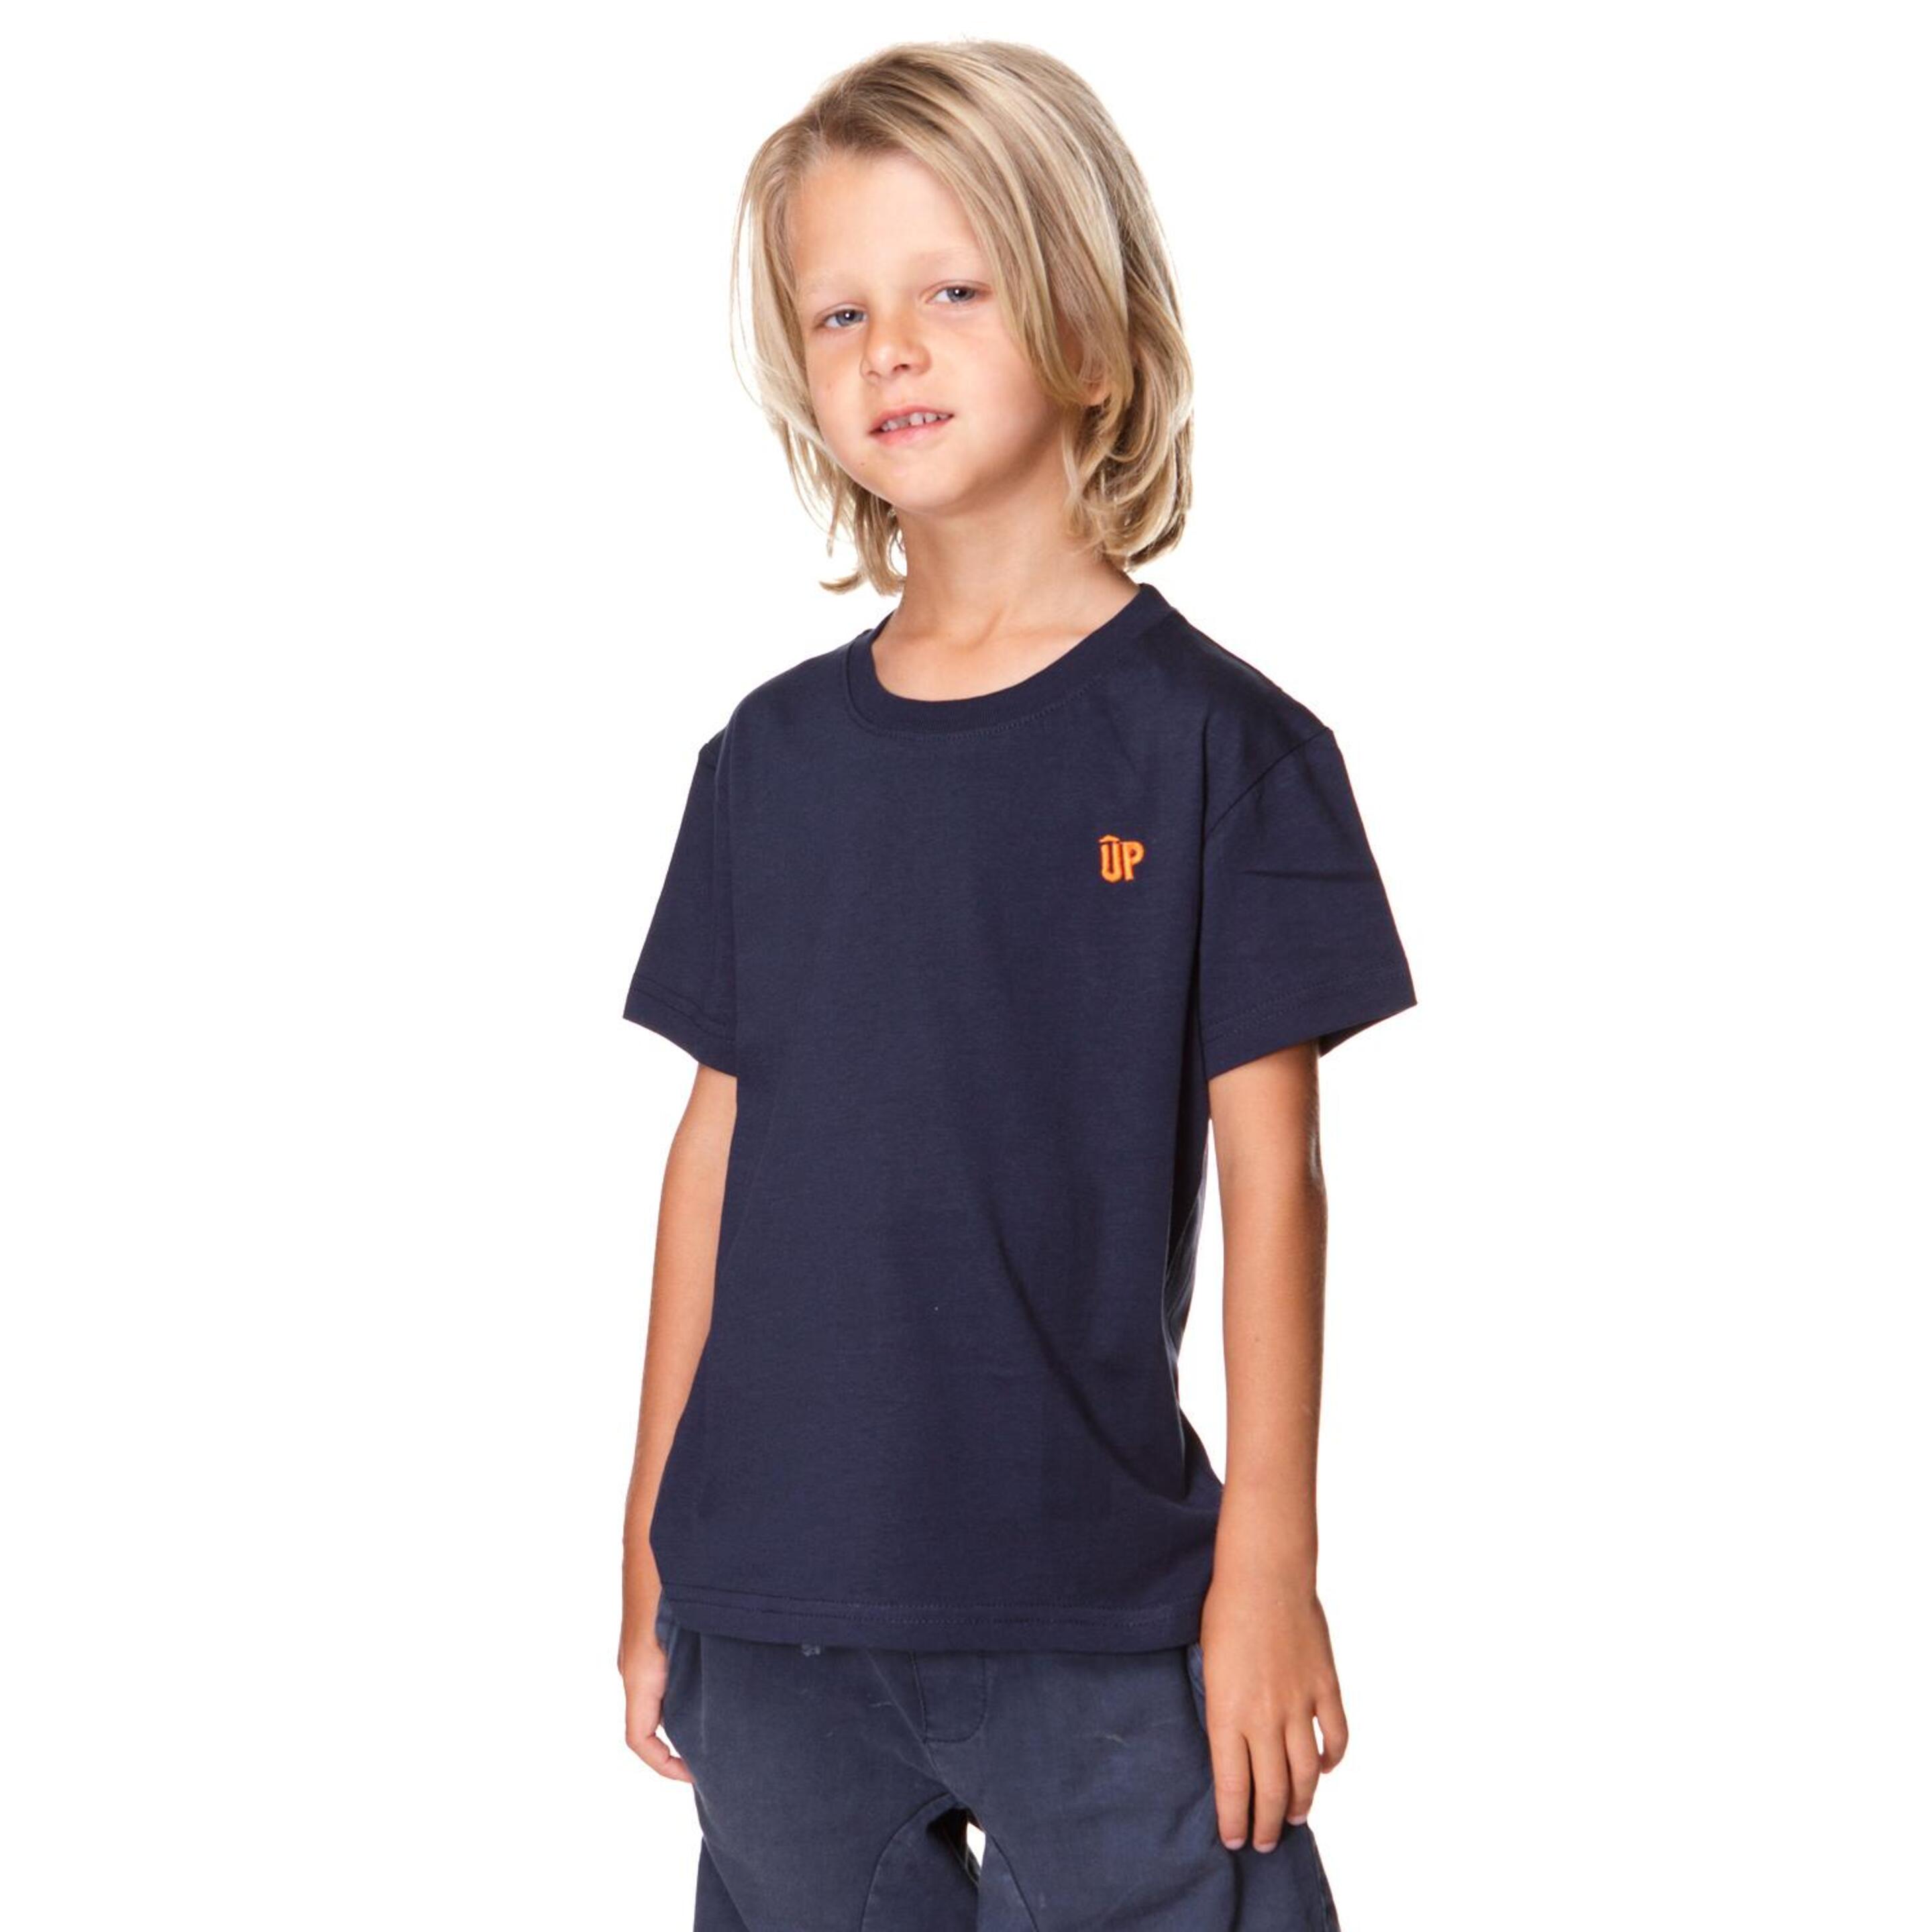 Up Basic Kid Camiseta M/c Algodon